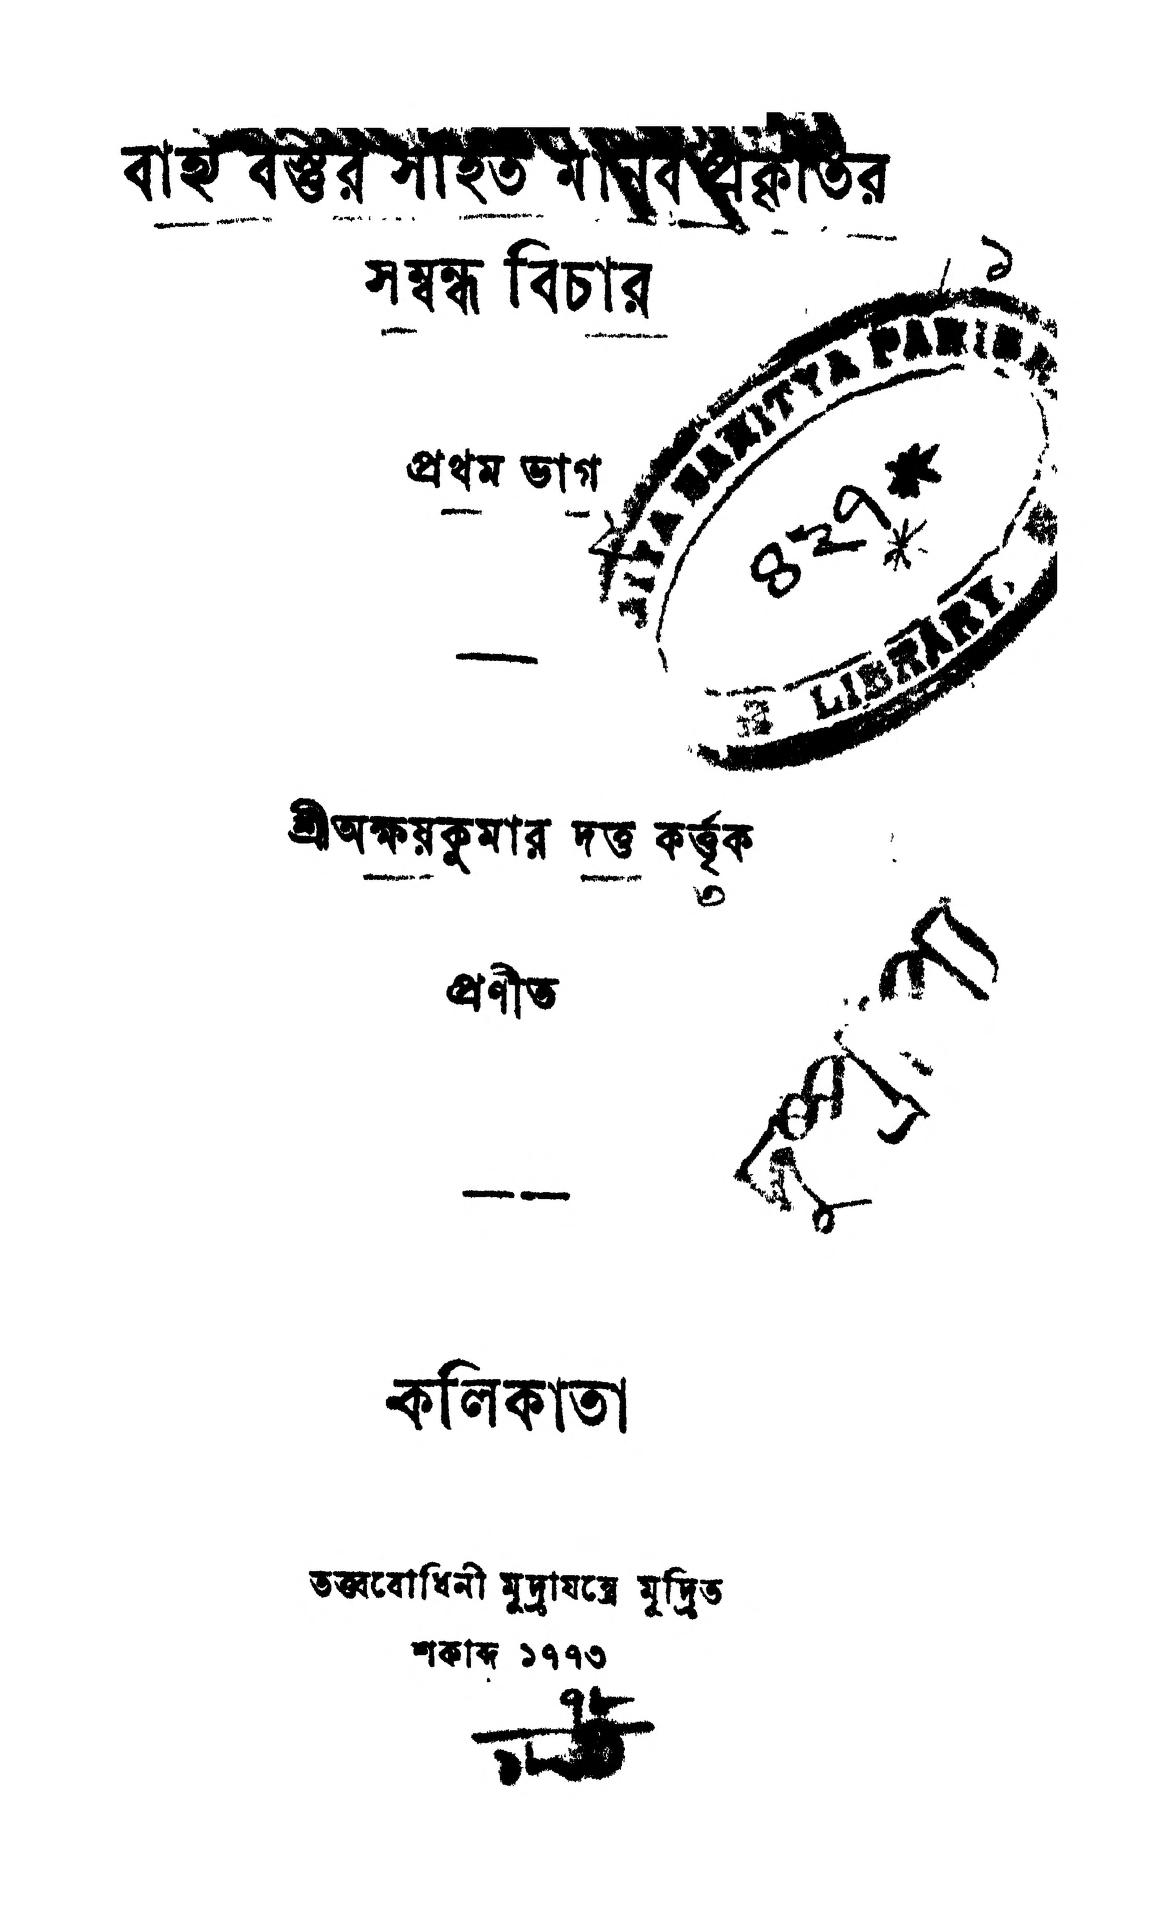 kushti bichar book in bengali